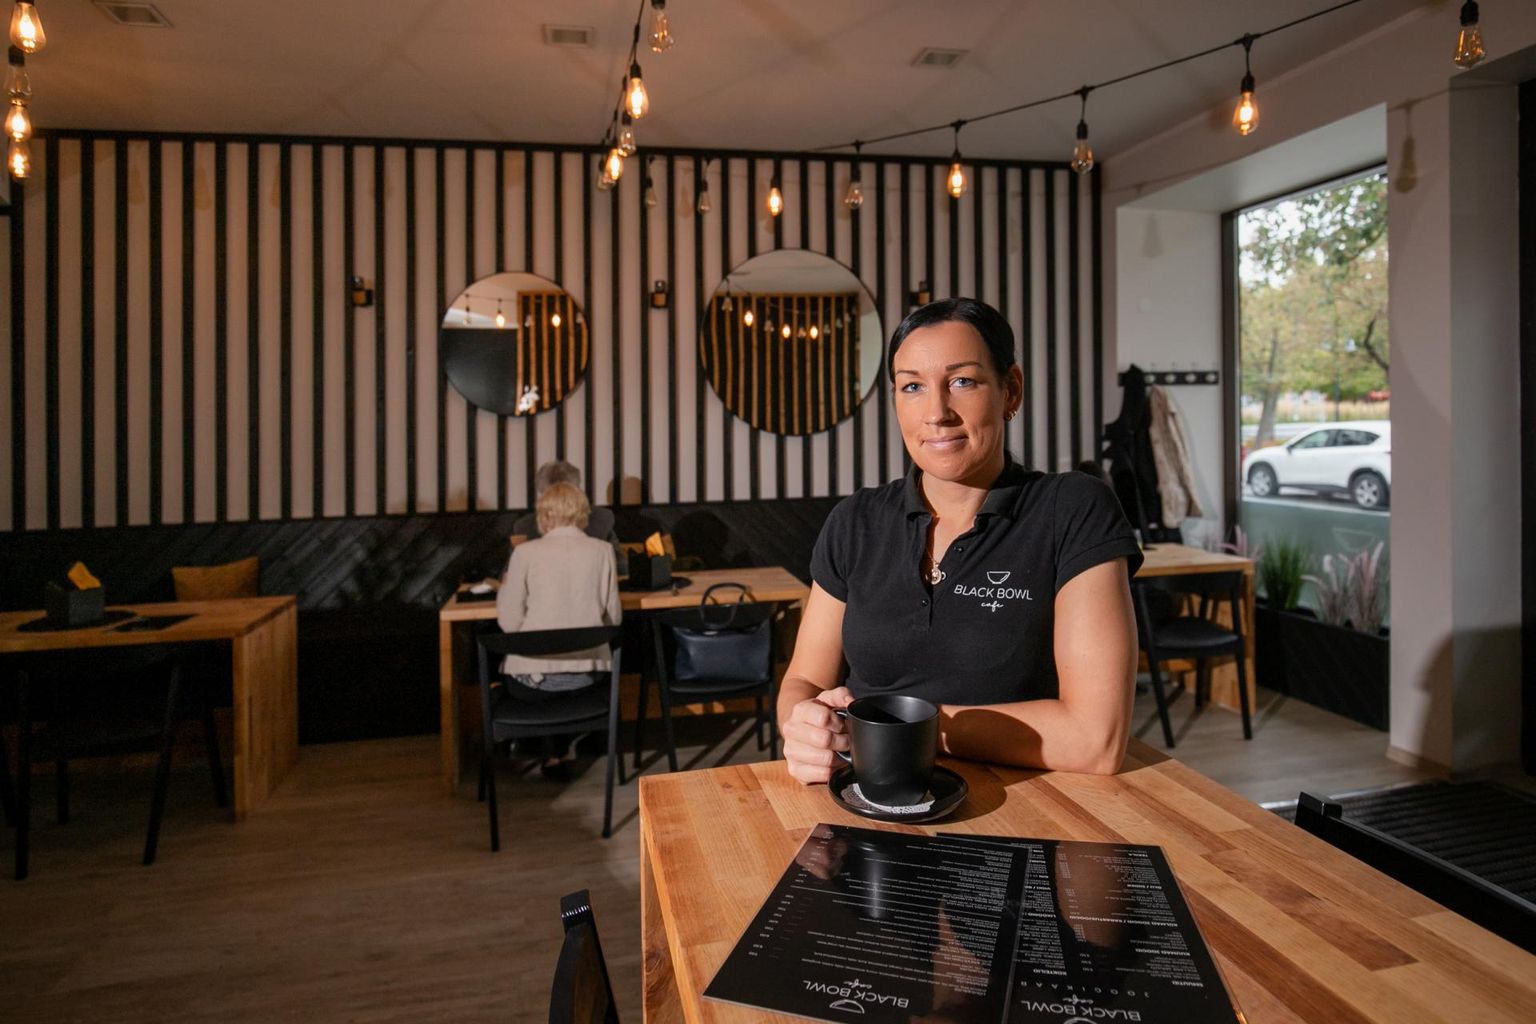 Kohviku Black Bowl Cafe omaniku Kertu Randoja sõnutsi on sügis õige aeg toitlustusäriga alustamiseks.